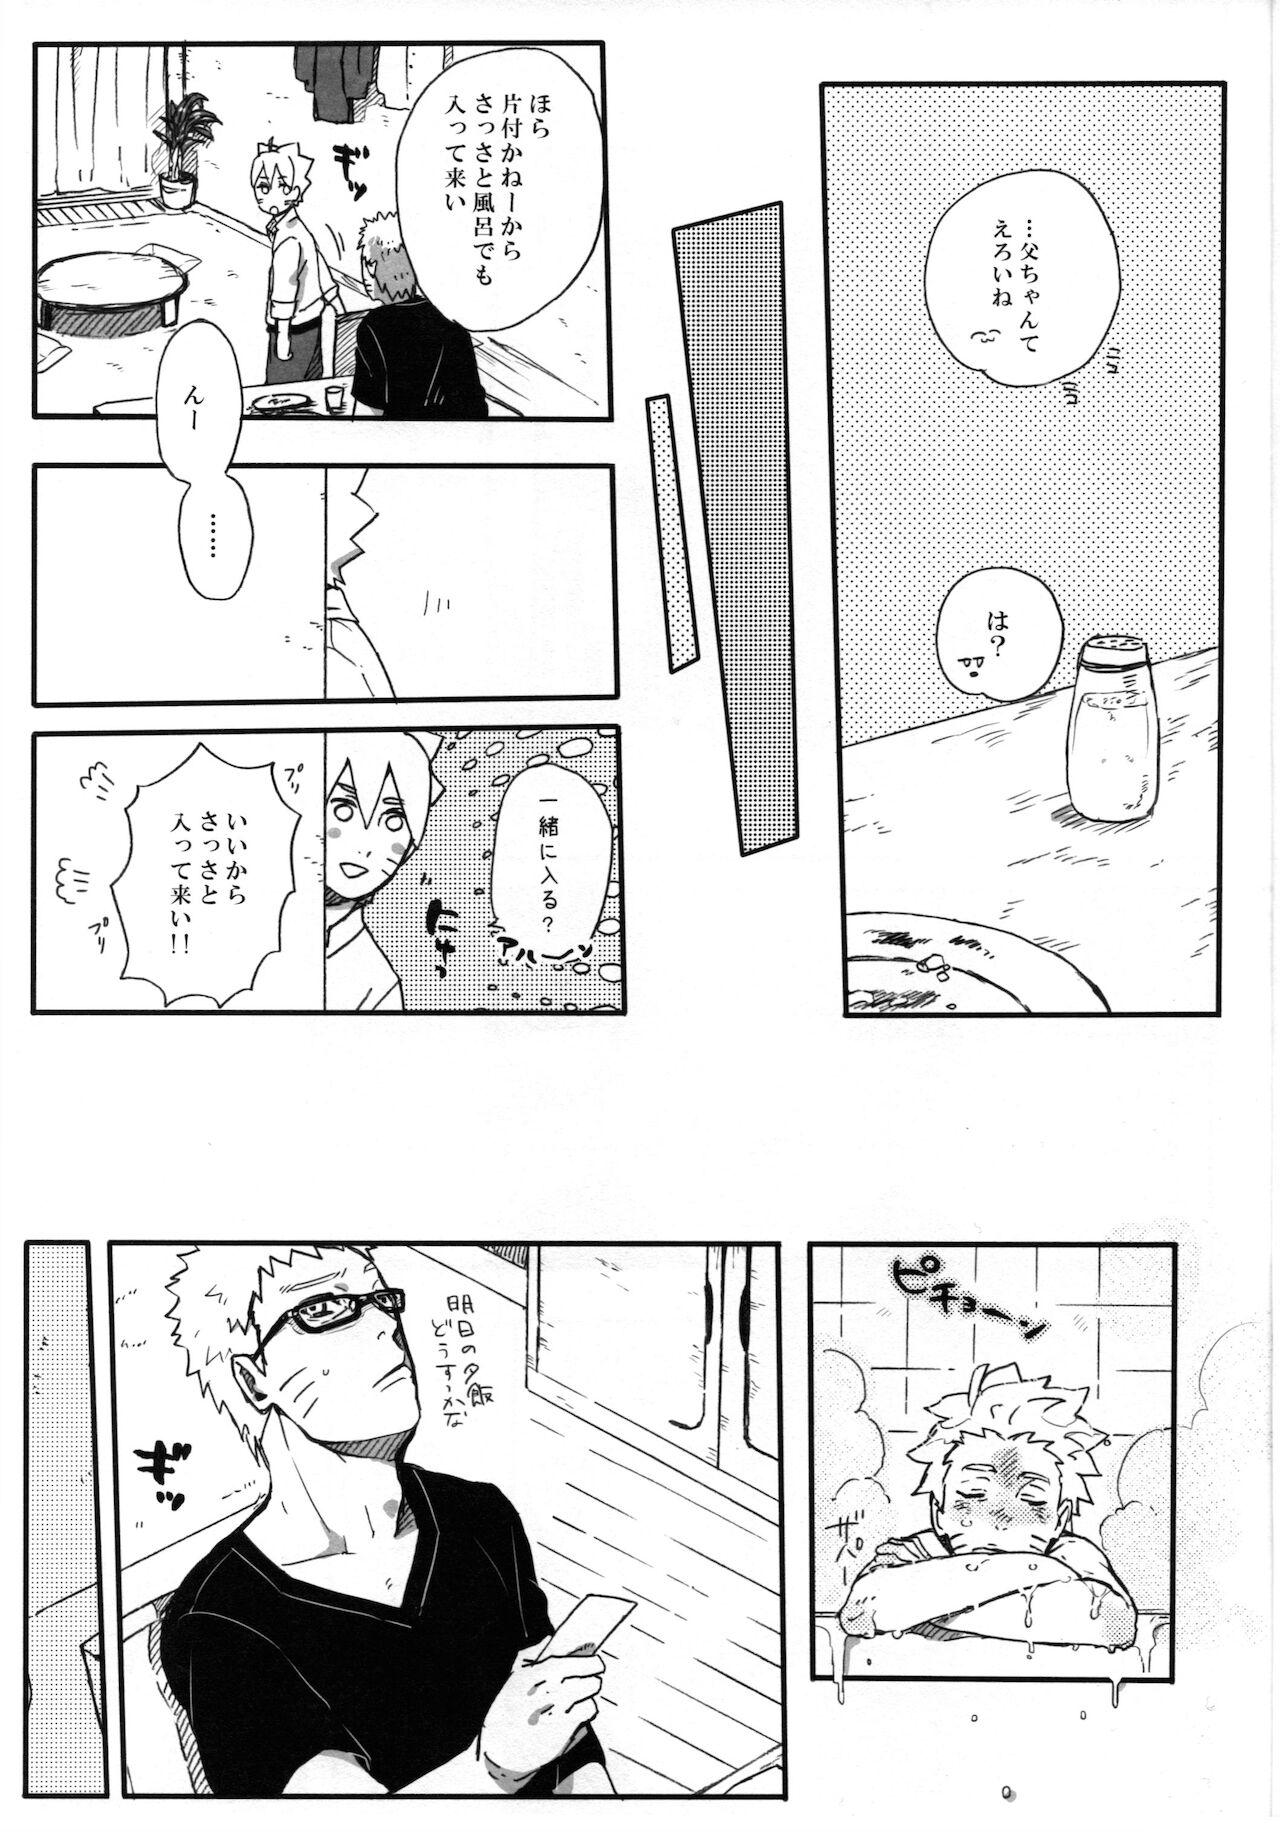 Putinha Getsuyou wa itsumo chikoku sunzen - Naruto Passivo - Page 10